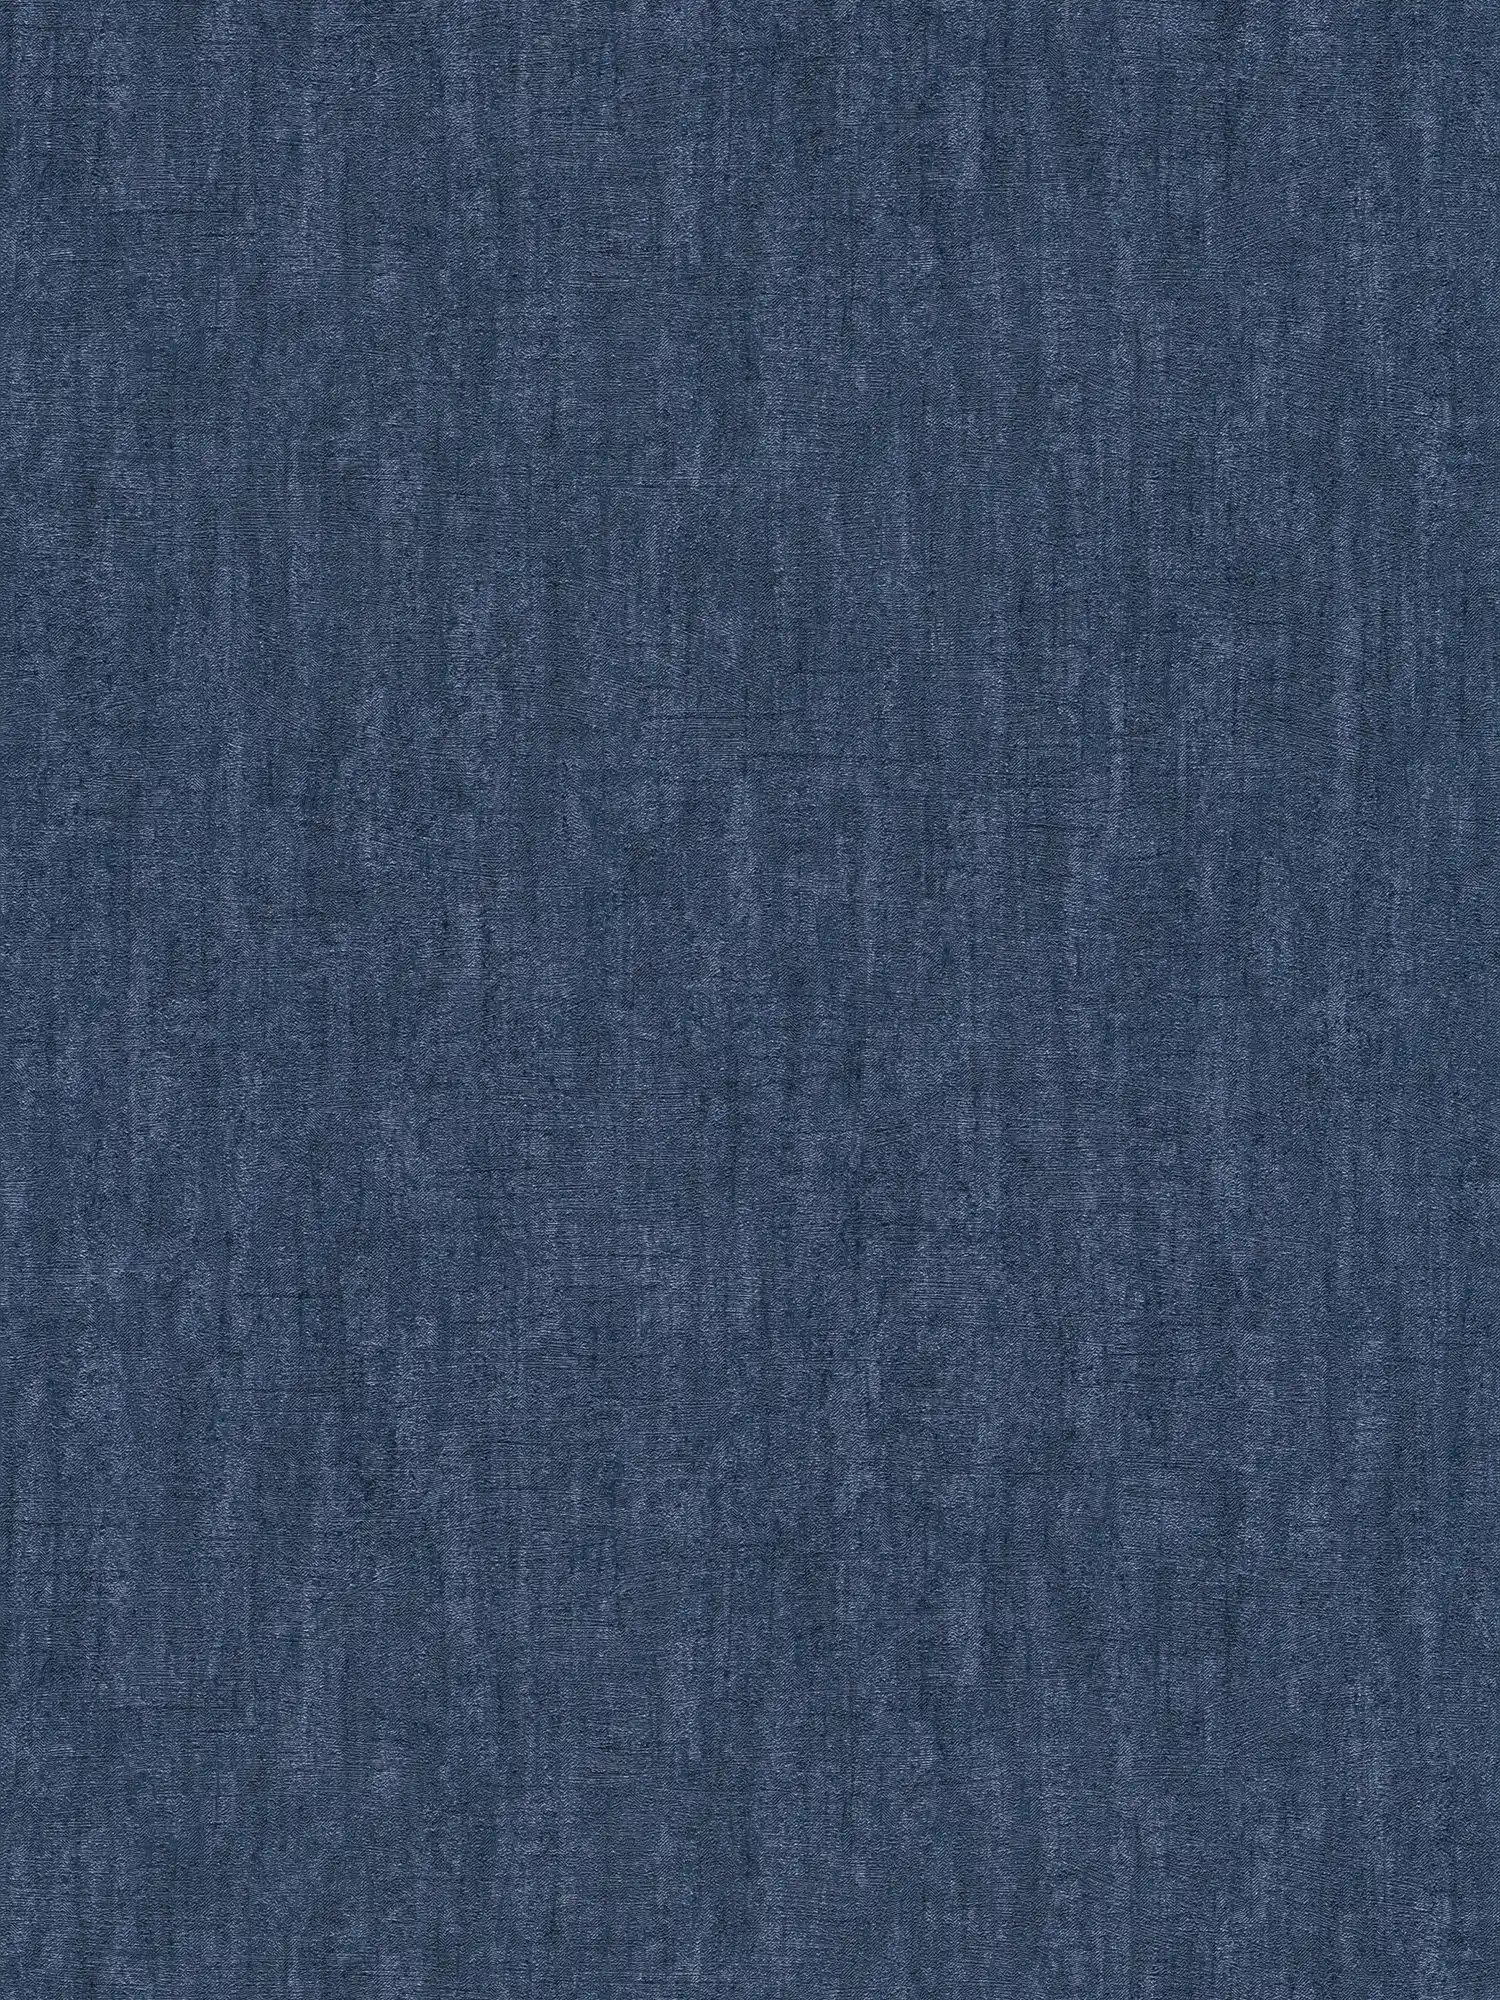 behang donkerblauw gevlekt, met structuur & glanseffect - blauw
